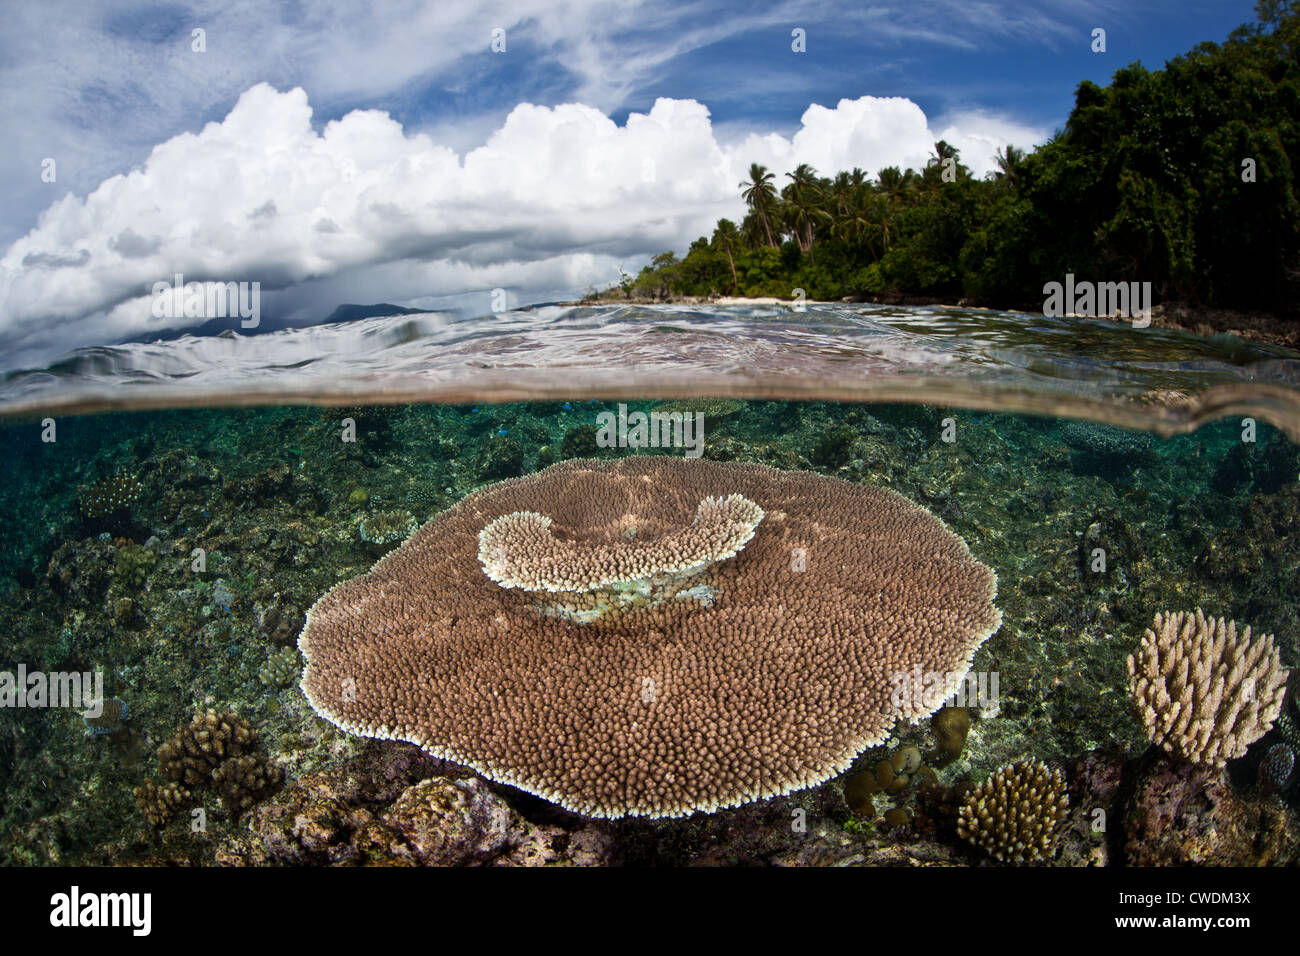 Una gran mesa coral Acropora sp., crece en un plano de arrecifes poco profundos cerca de una isla de piedra caliza. Este tipo de coral crece rápidamente. Foto de stock